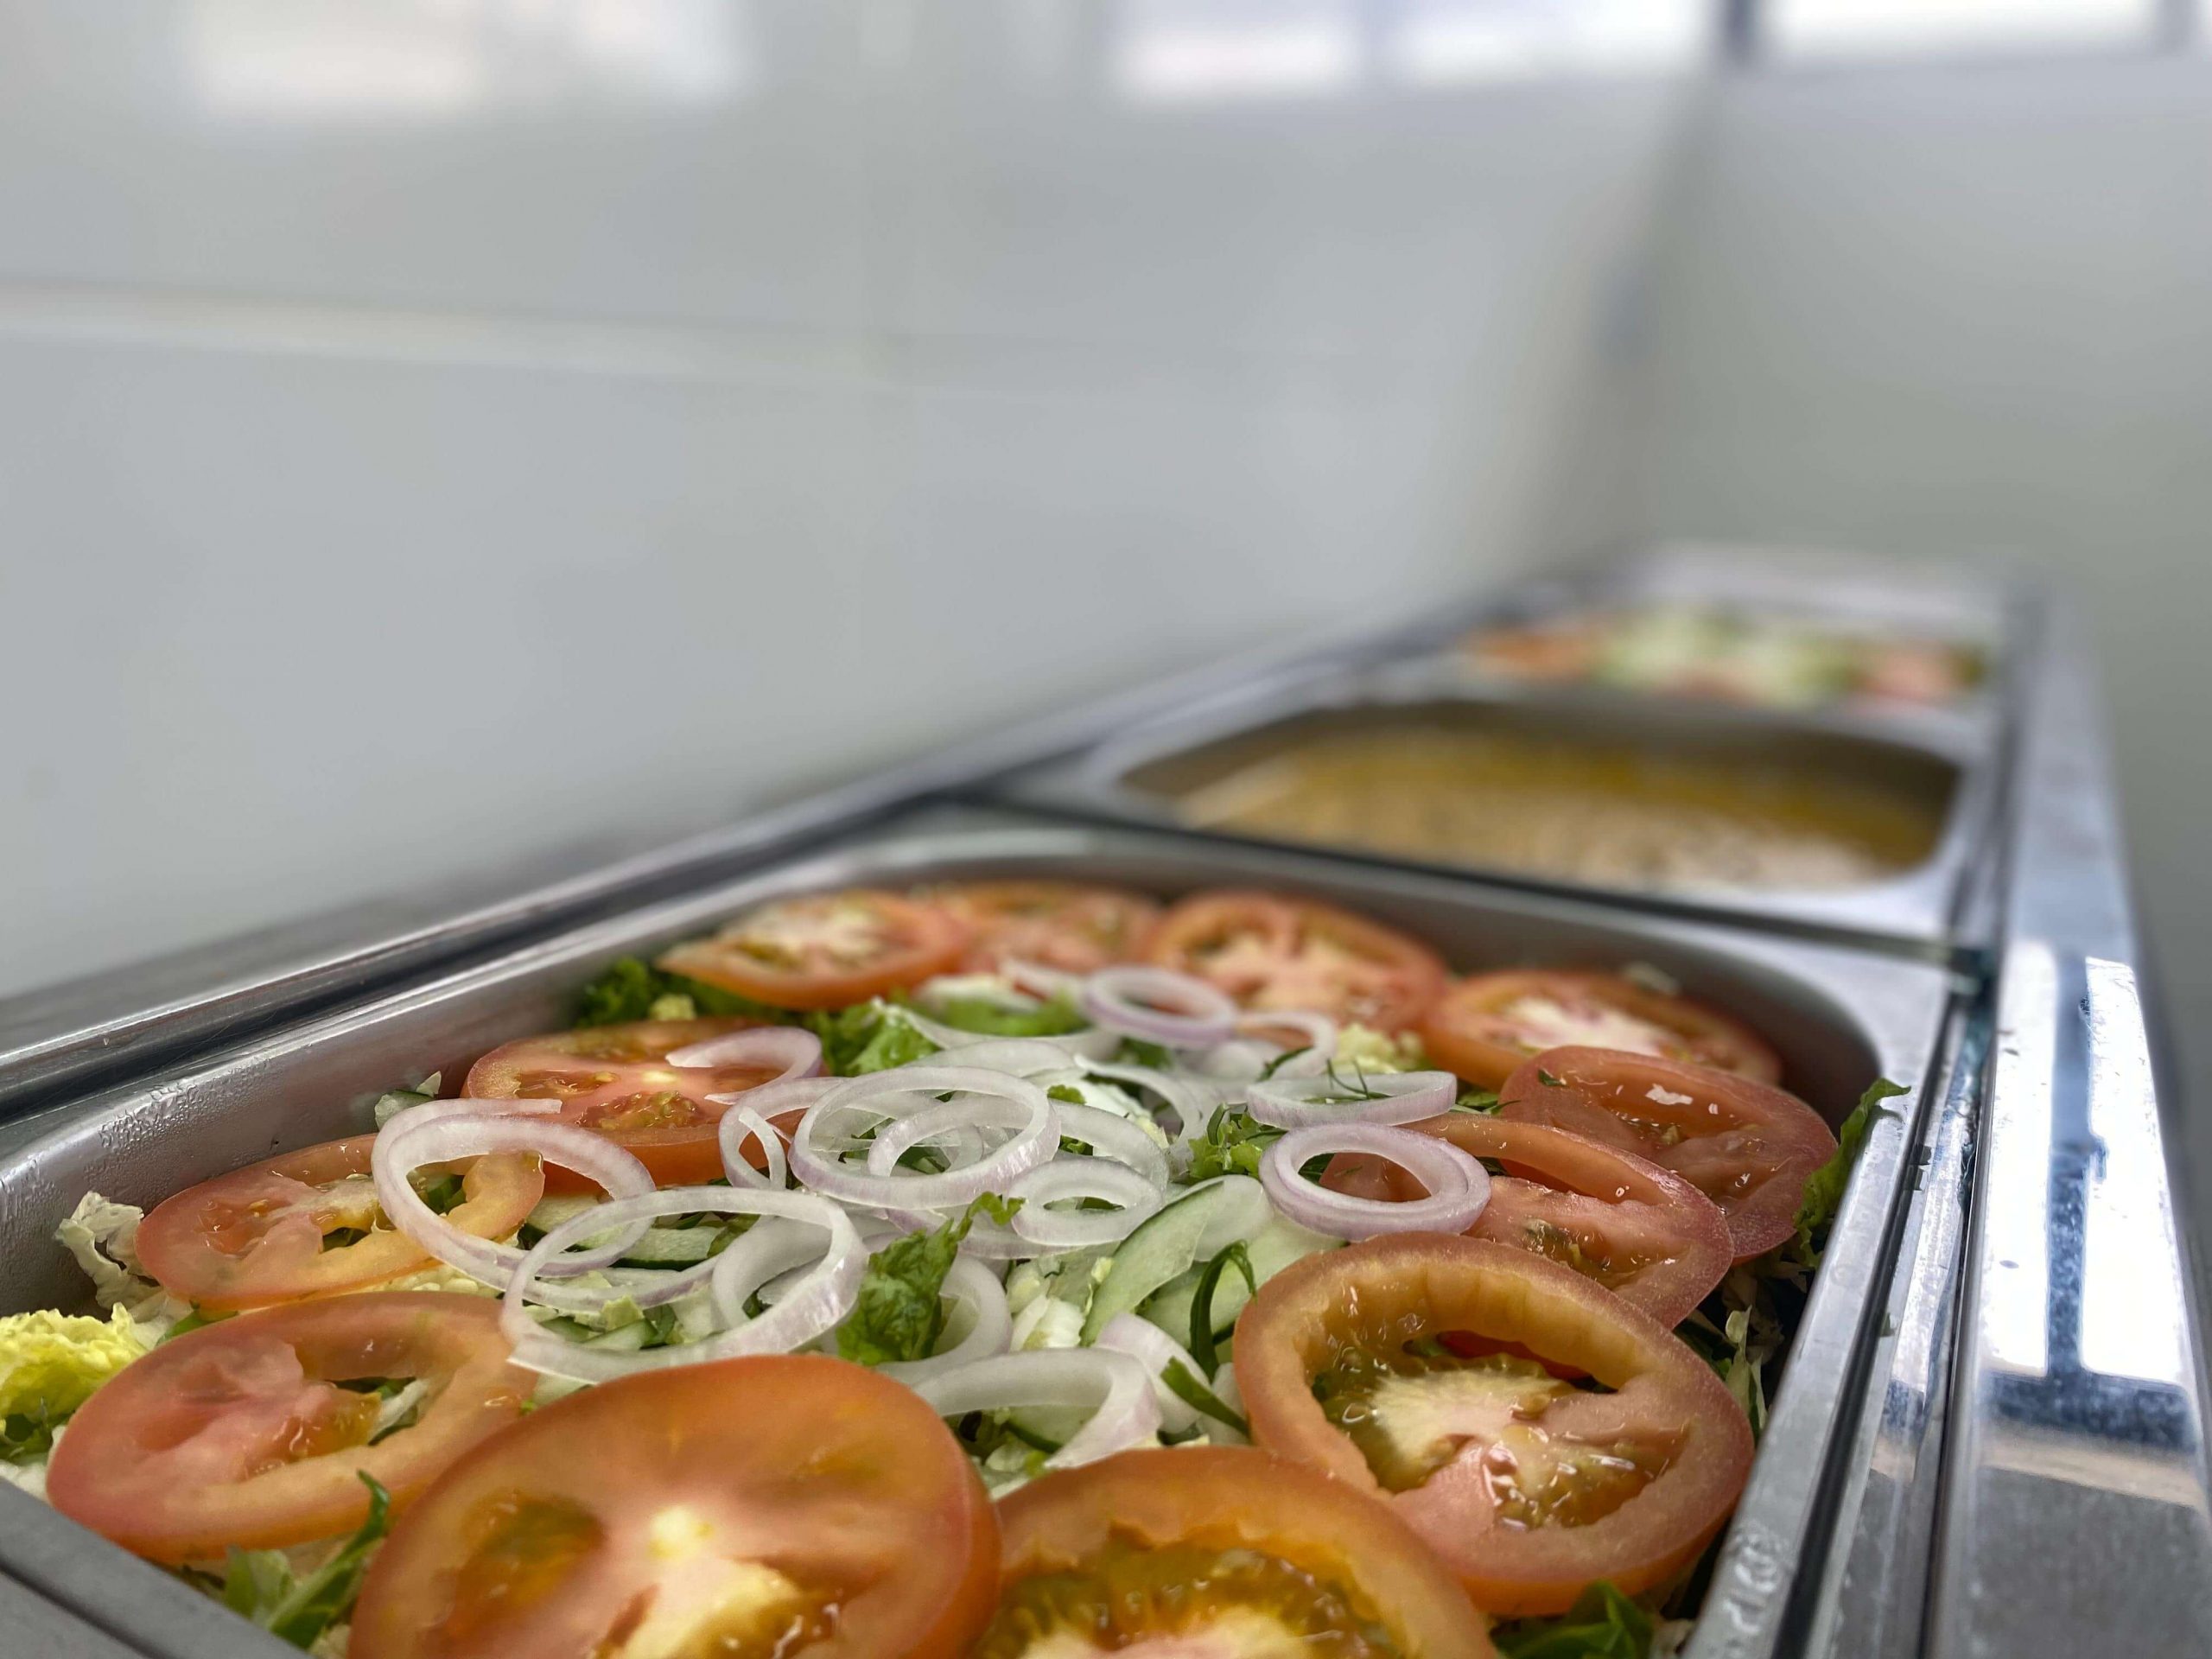 Serviço de Nutrição e Dietética é destaque no Hospital Regional com mais de 900 refeições diárias 5